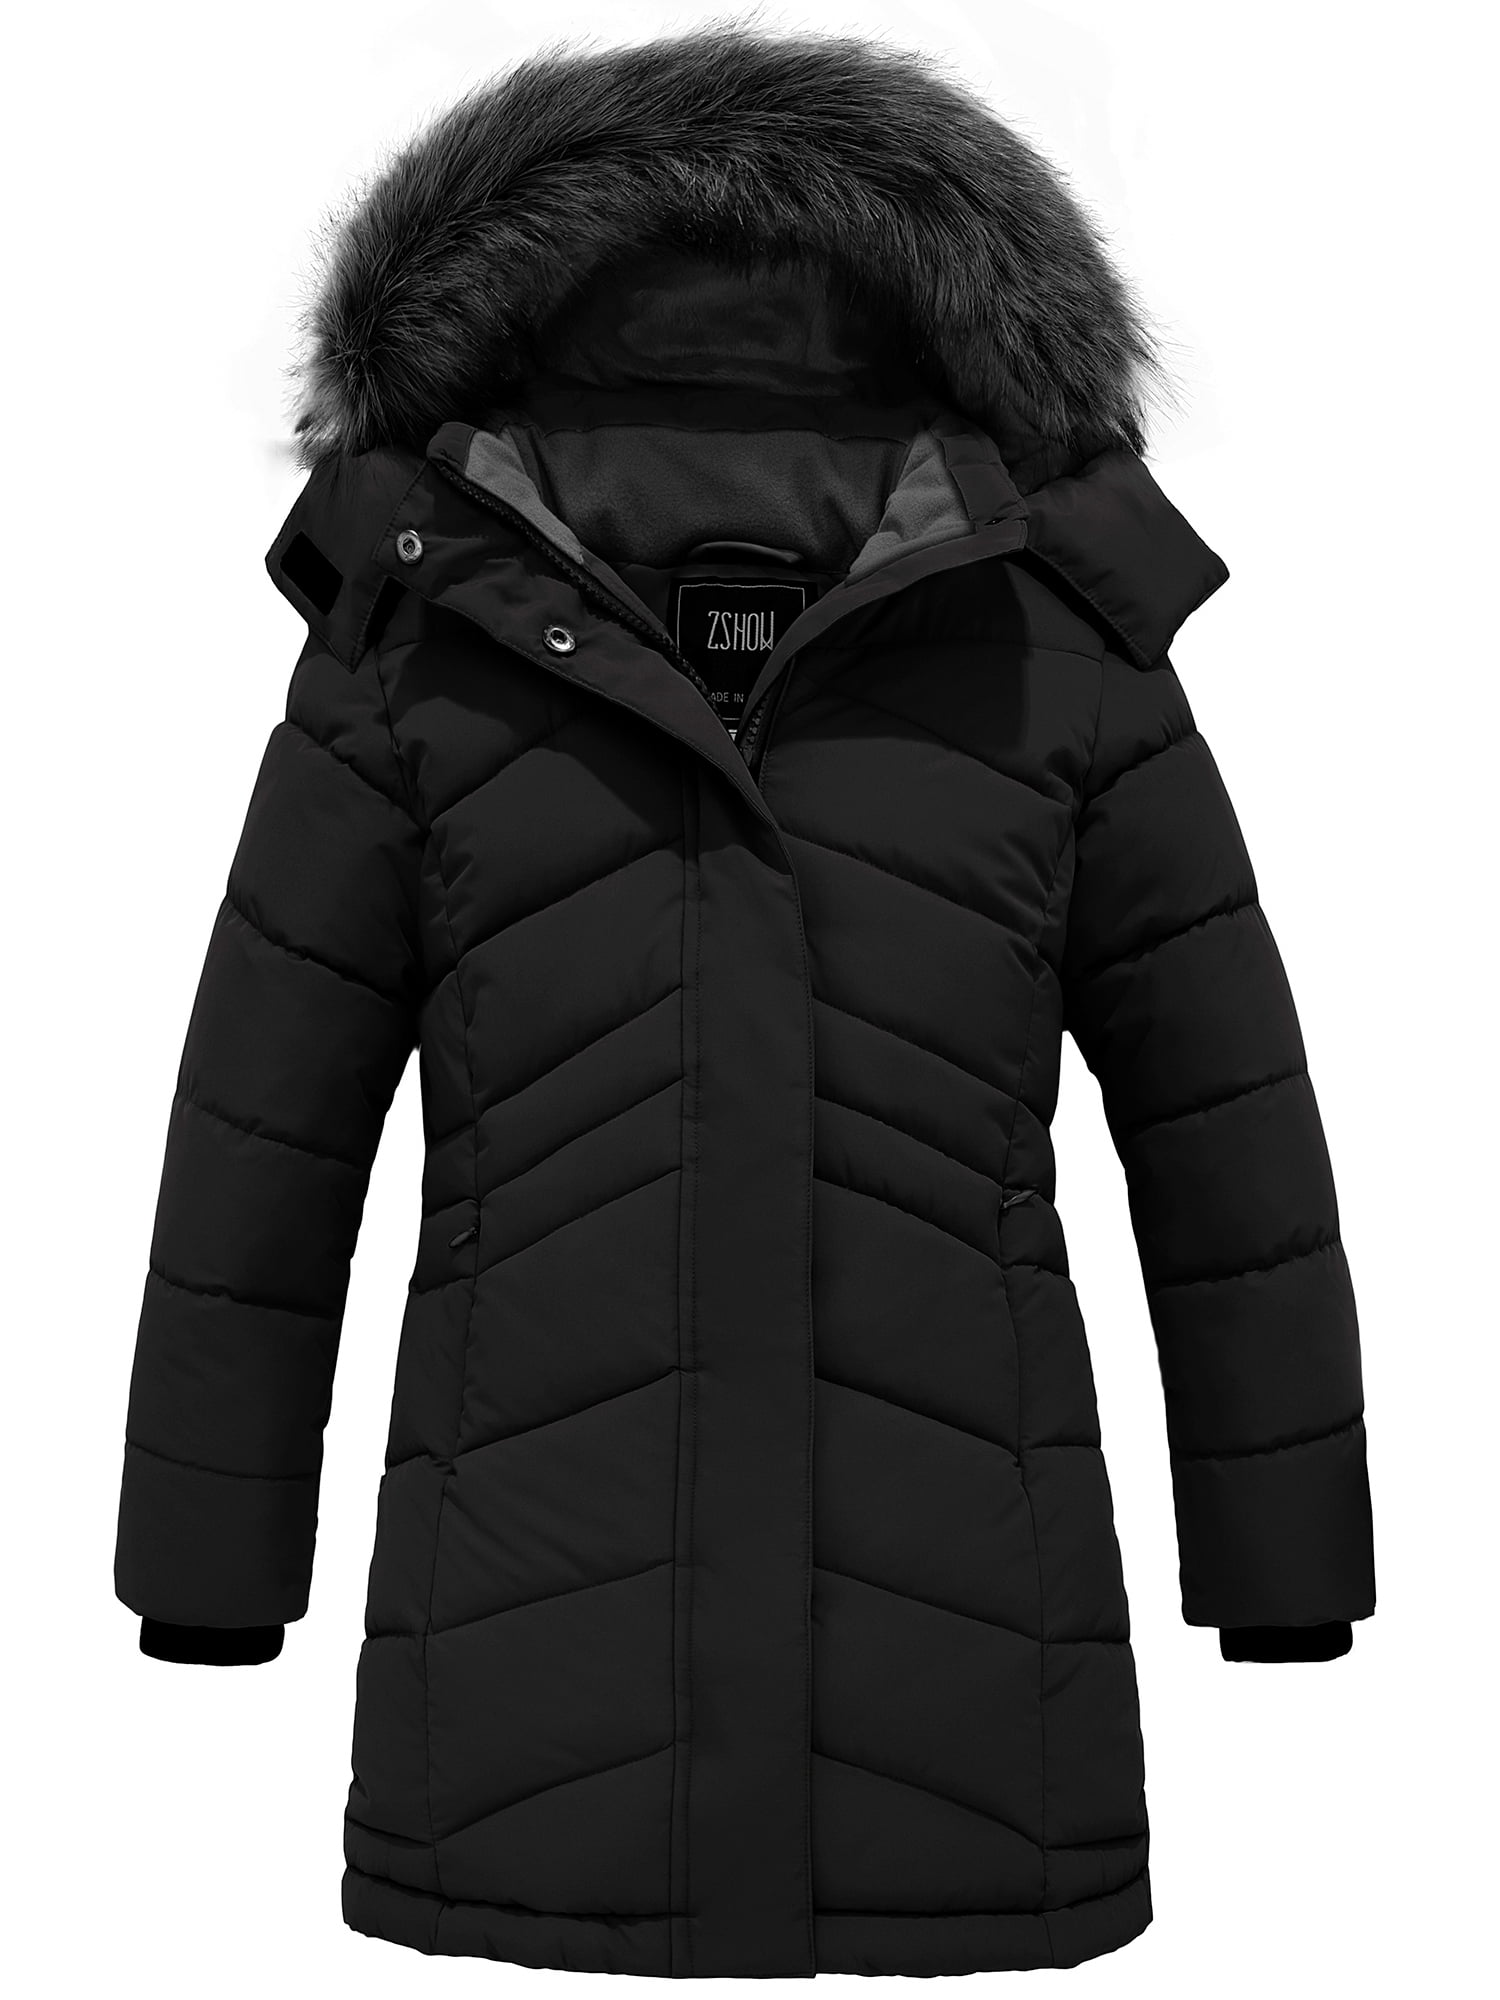 ZSHOW Girls' Puffer Coat Warm Puffer Jacket with Hood Winter Outerwear ...